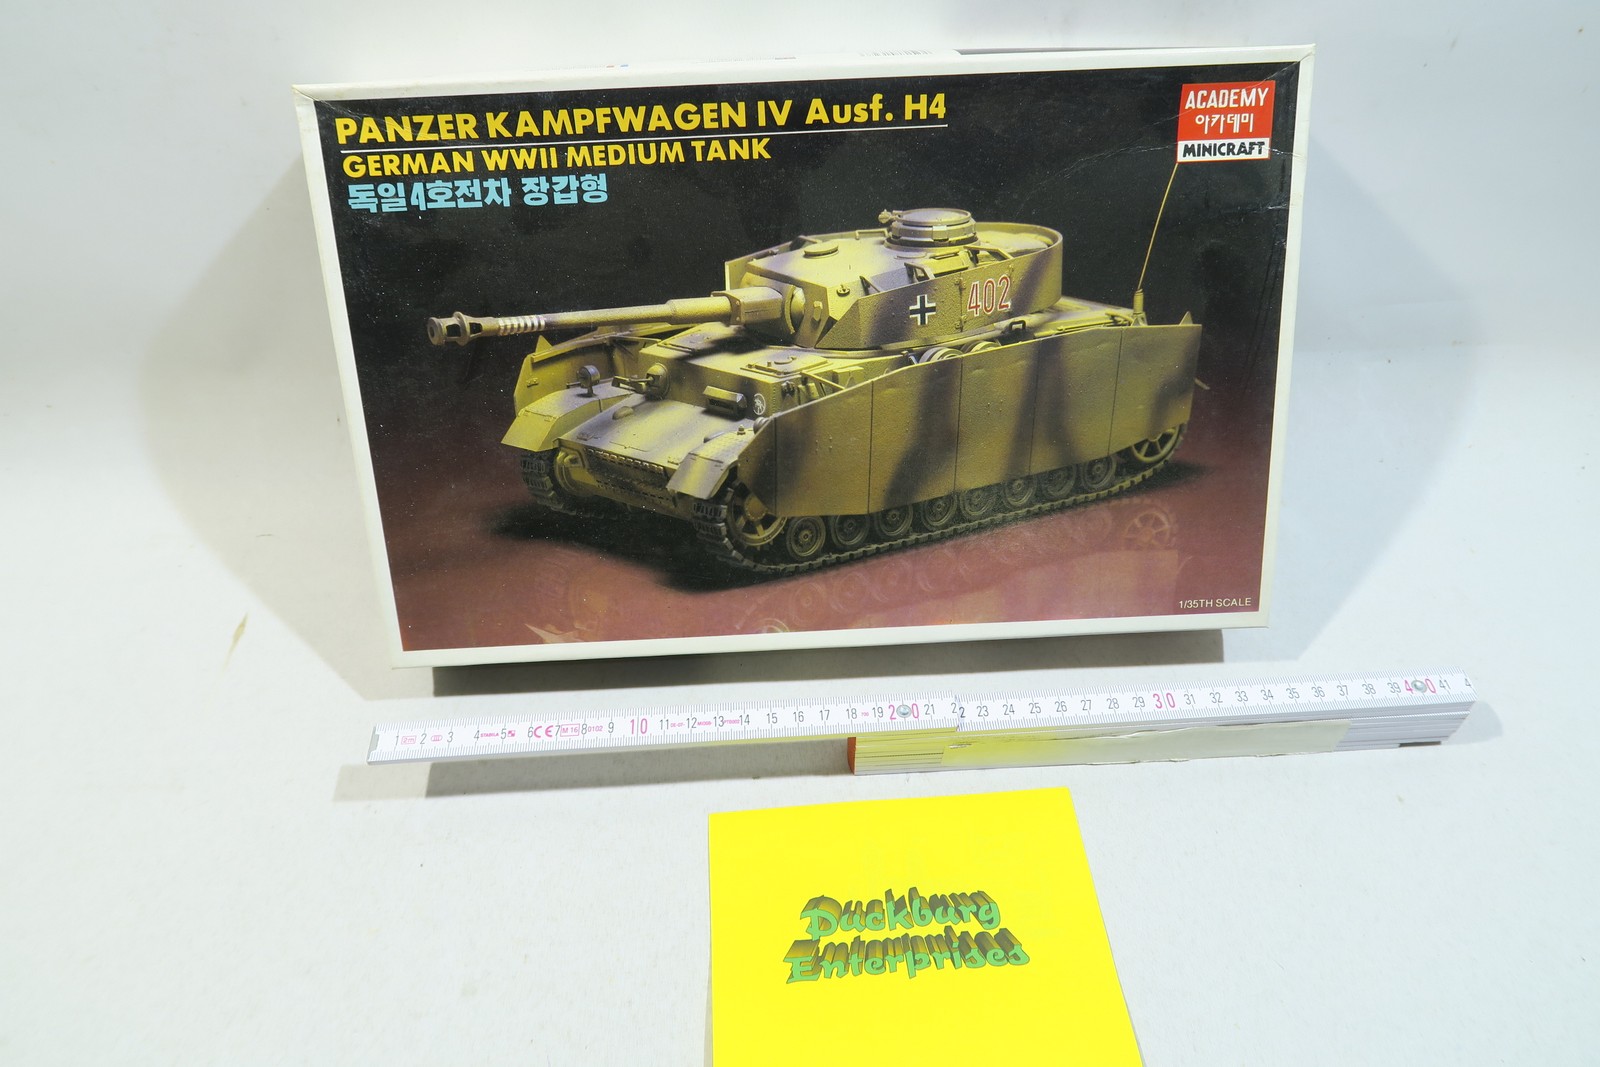 Academy Minicraft 1327 Panzerkampfwagen IV Aus. H4  1:35 mb13533